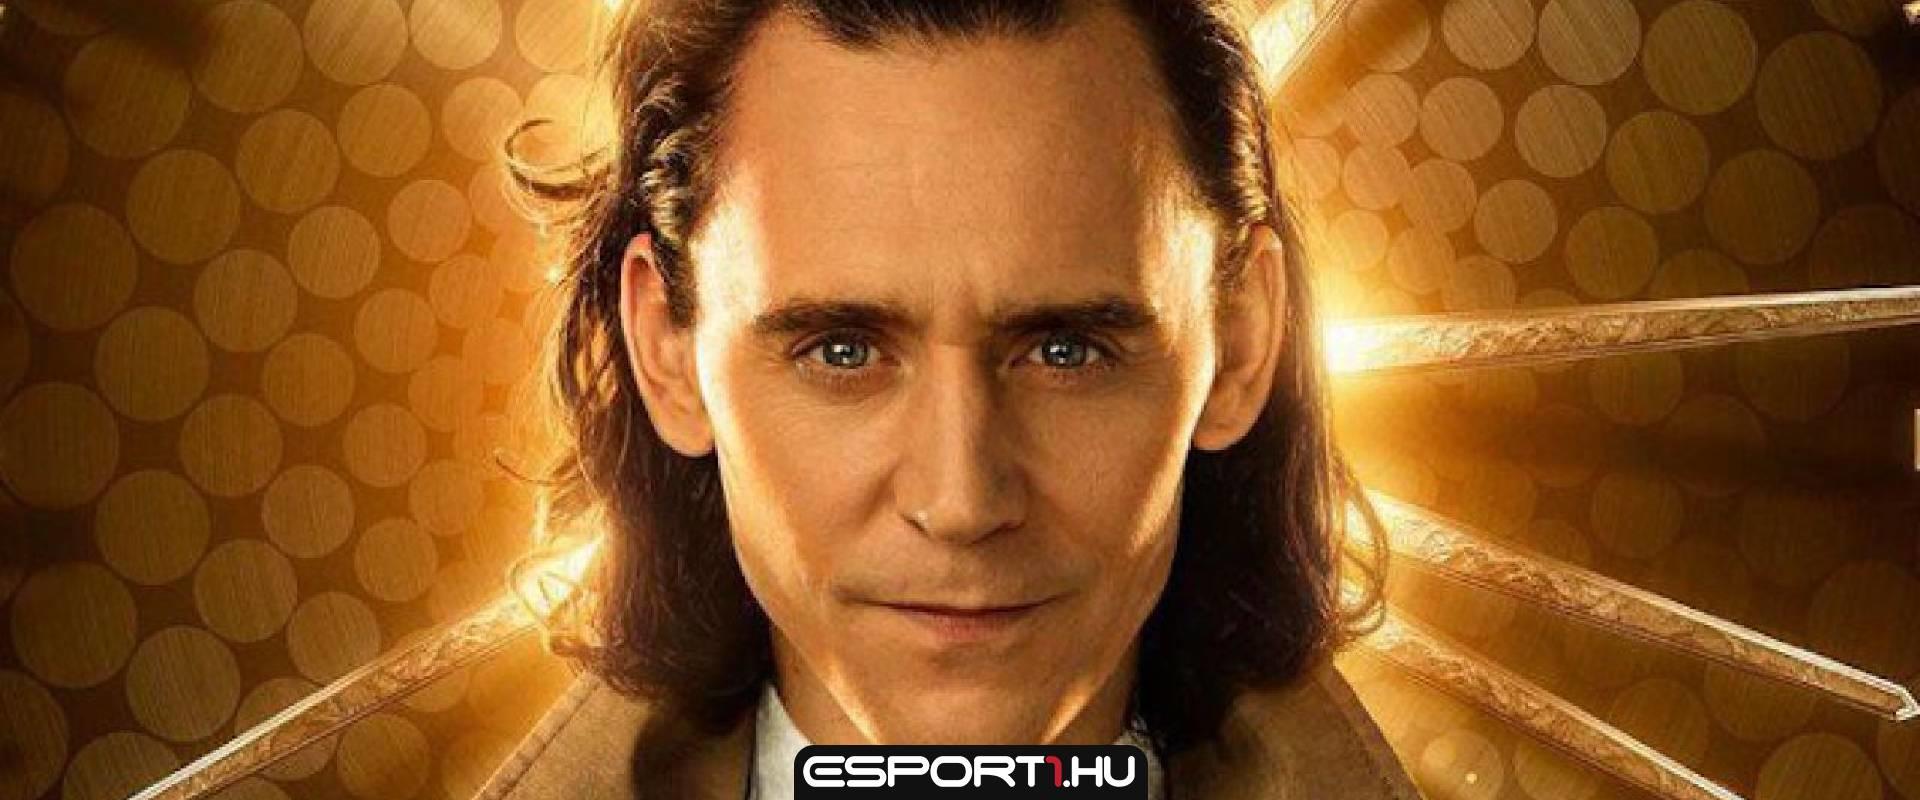 Így reagált Tom Hiddleston arra, hogy Loki karaktere biszexuális